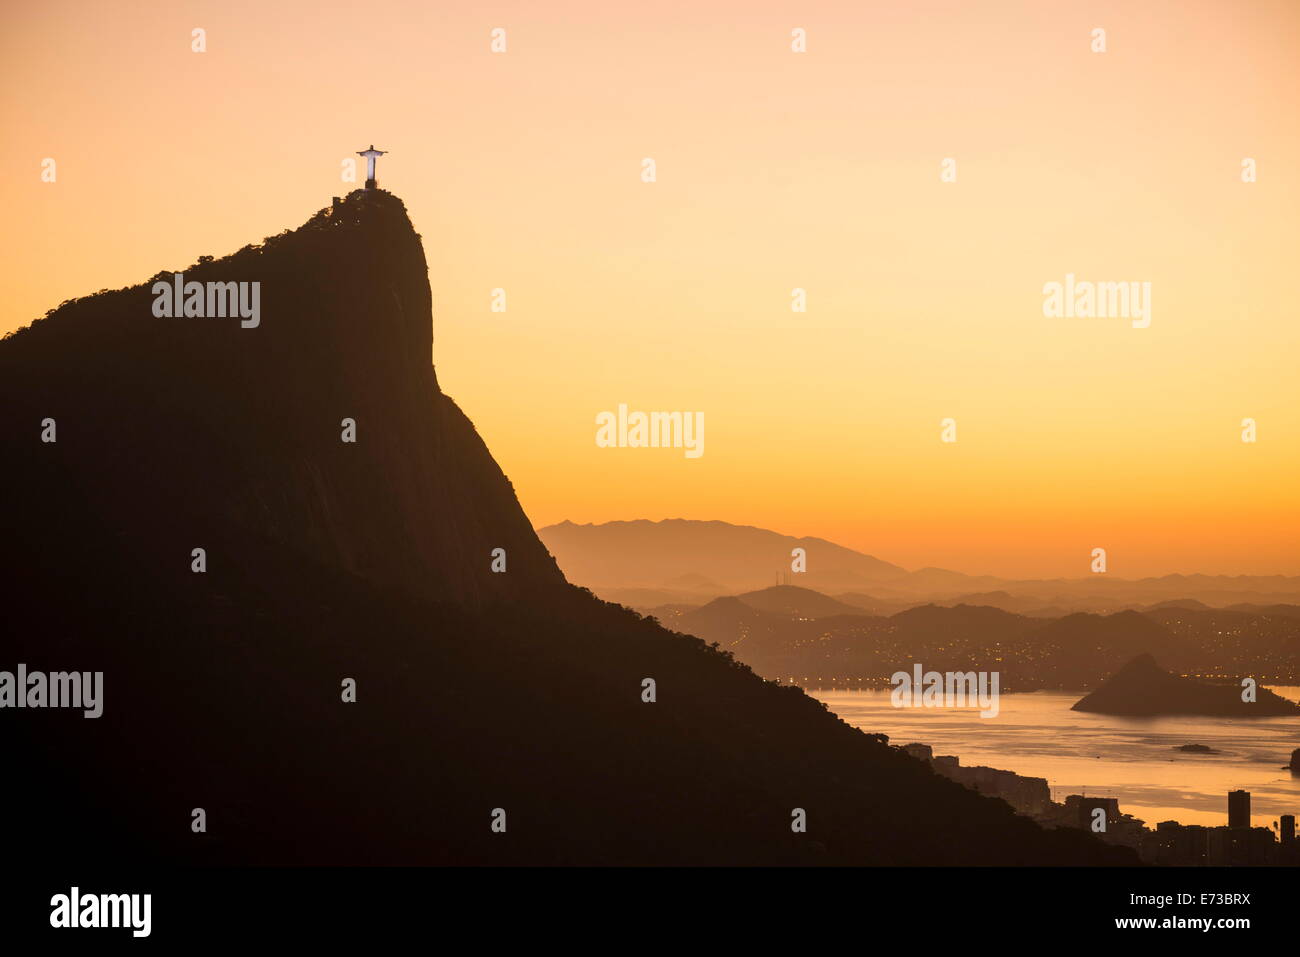 Afficher du Chinois Vista à l'aube, Rio de Janeiro, Brésil, Amérique du Sud Banque D'Images